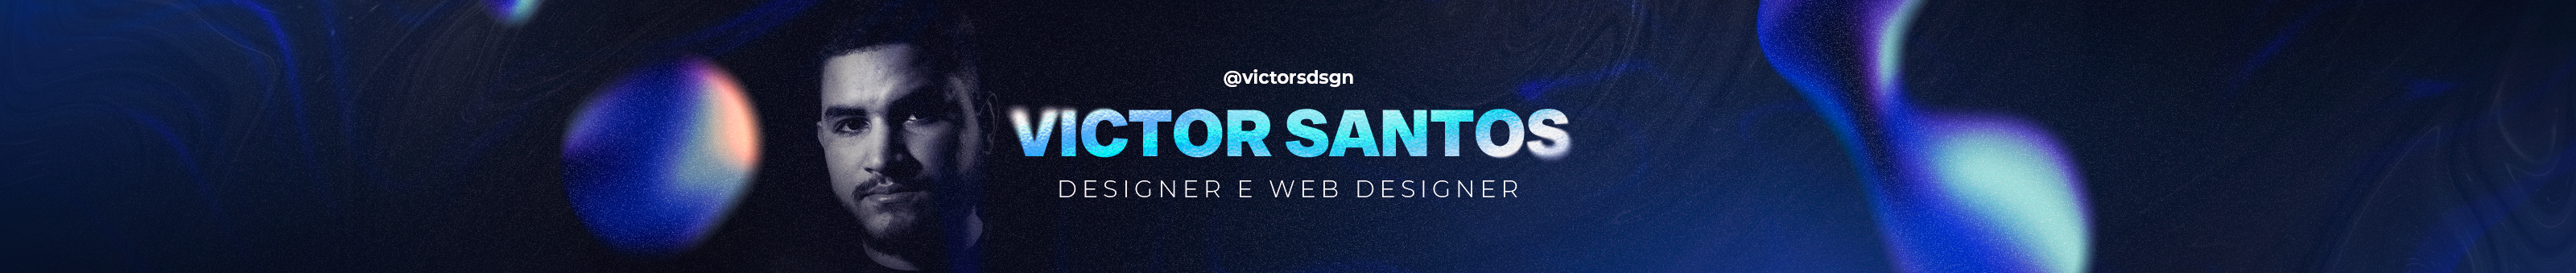 Victor Santos's profile banner